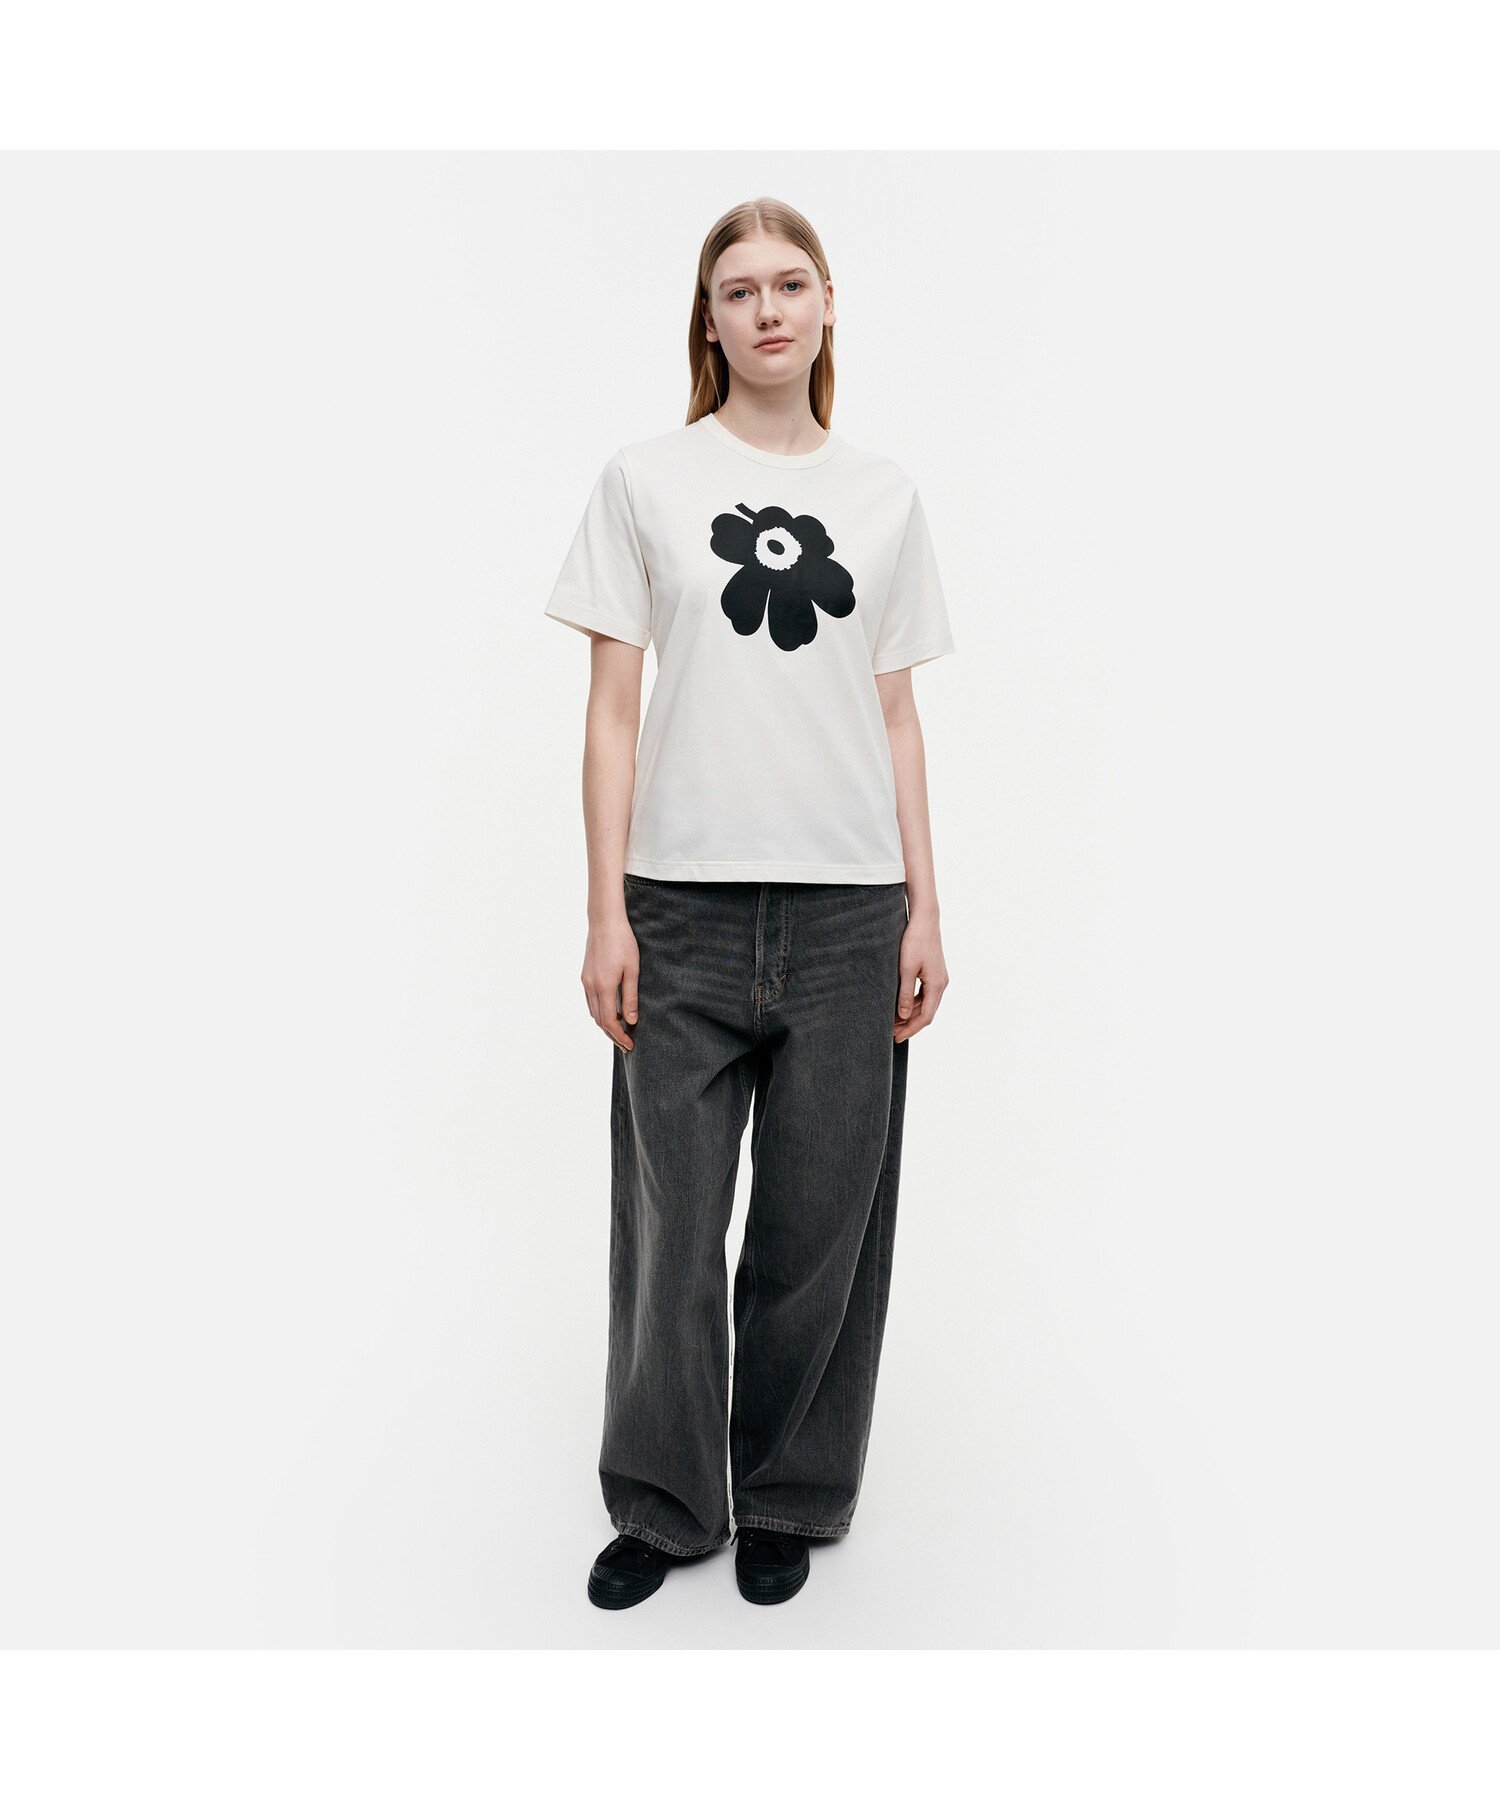 Marimekko Erna relaxed Unikko placement Tシャツ マリメッコ トップス シャツ・ブラウス ホワイト ブラック【送料無料】